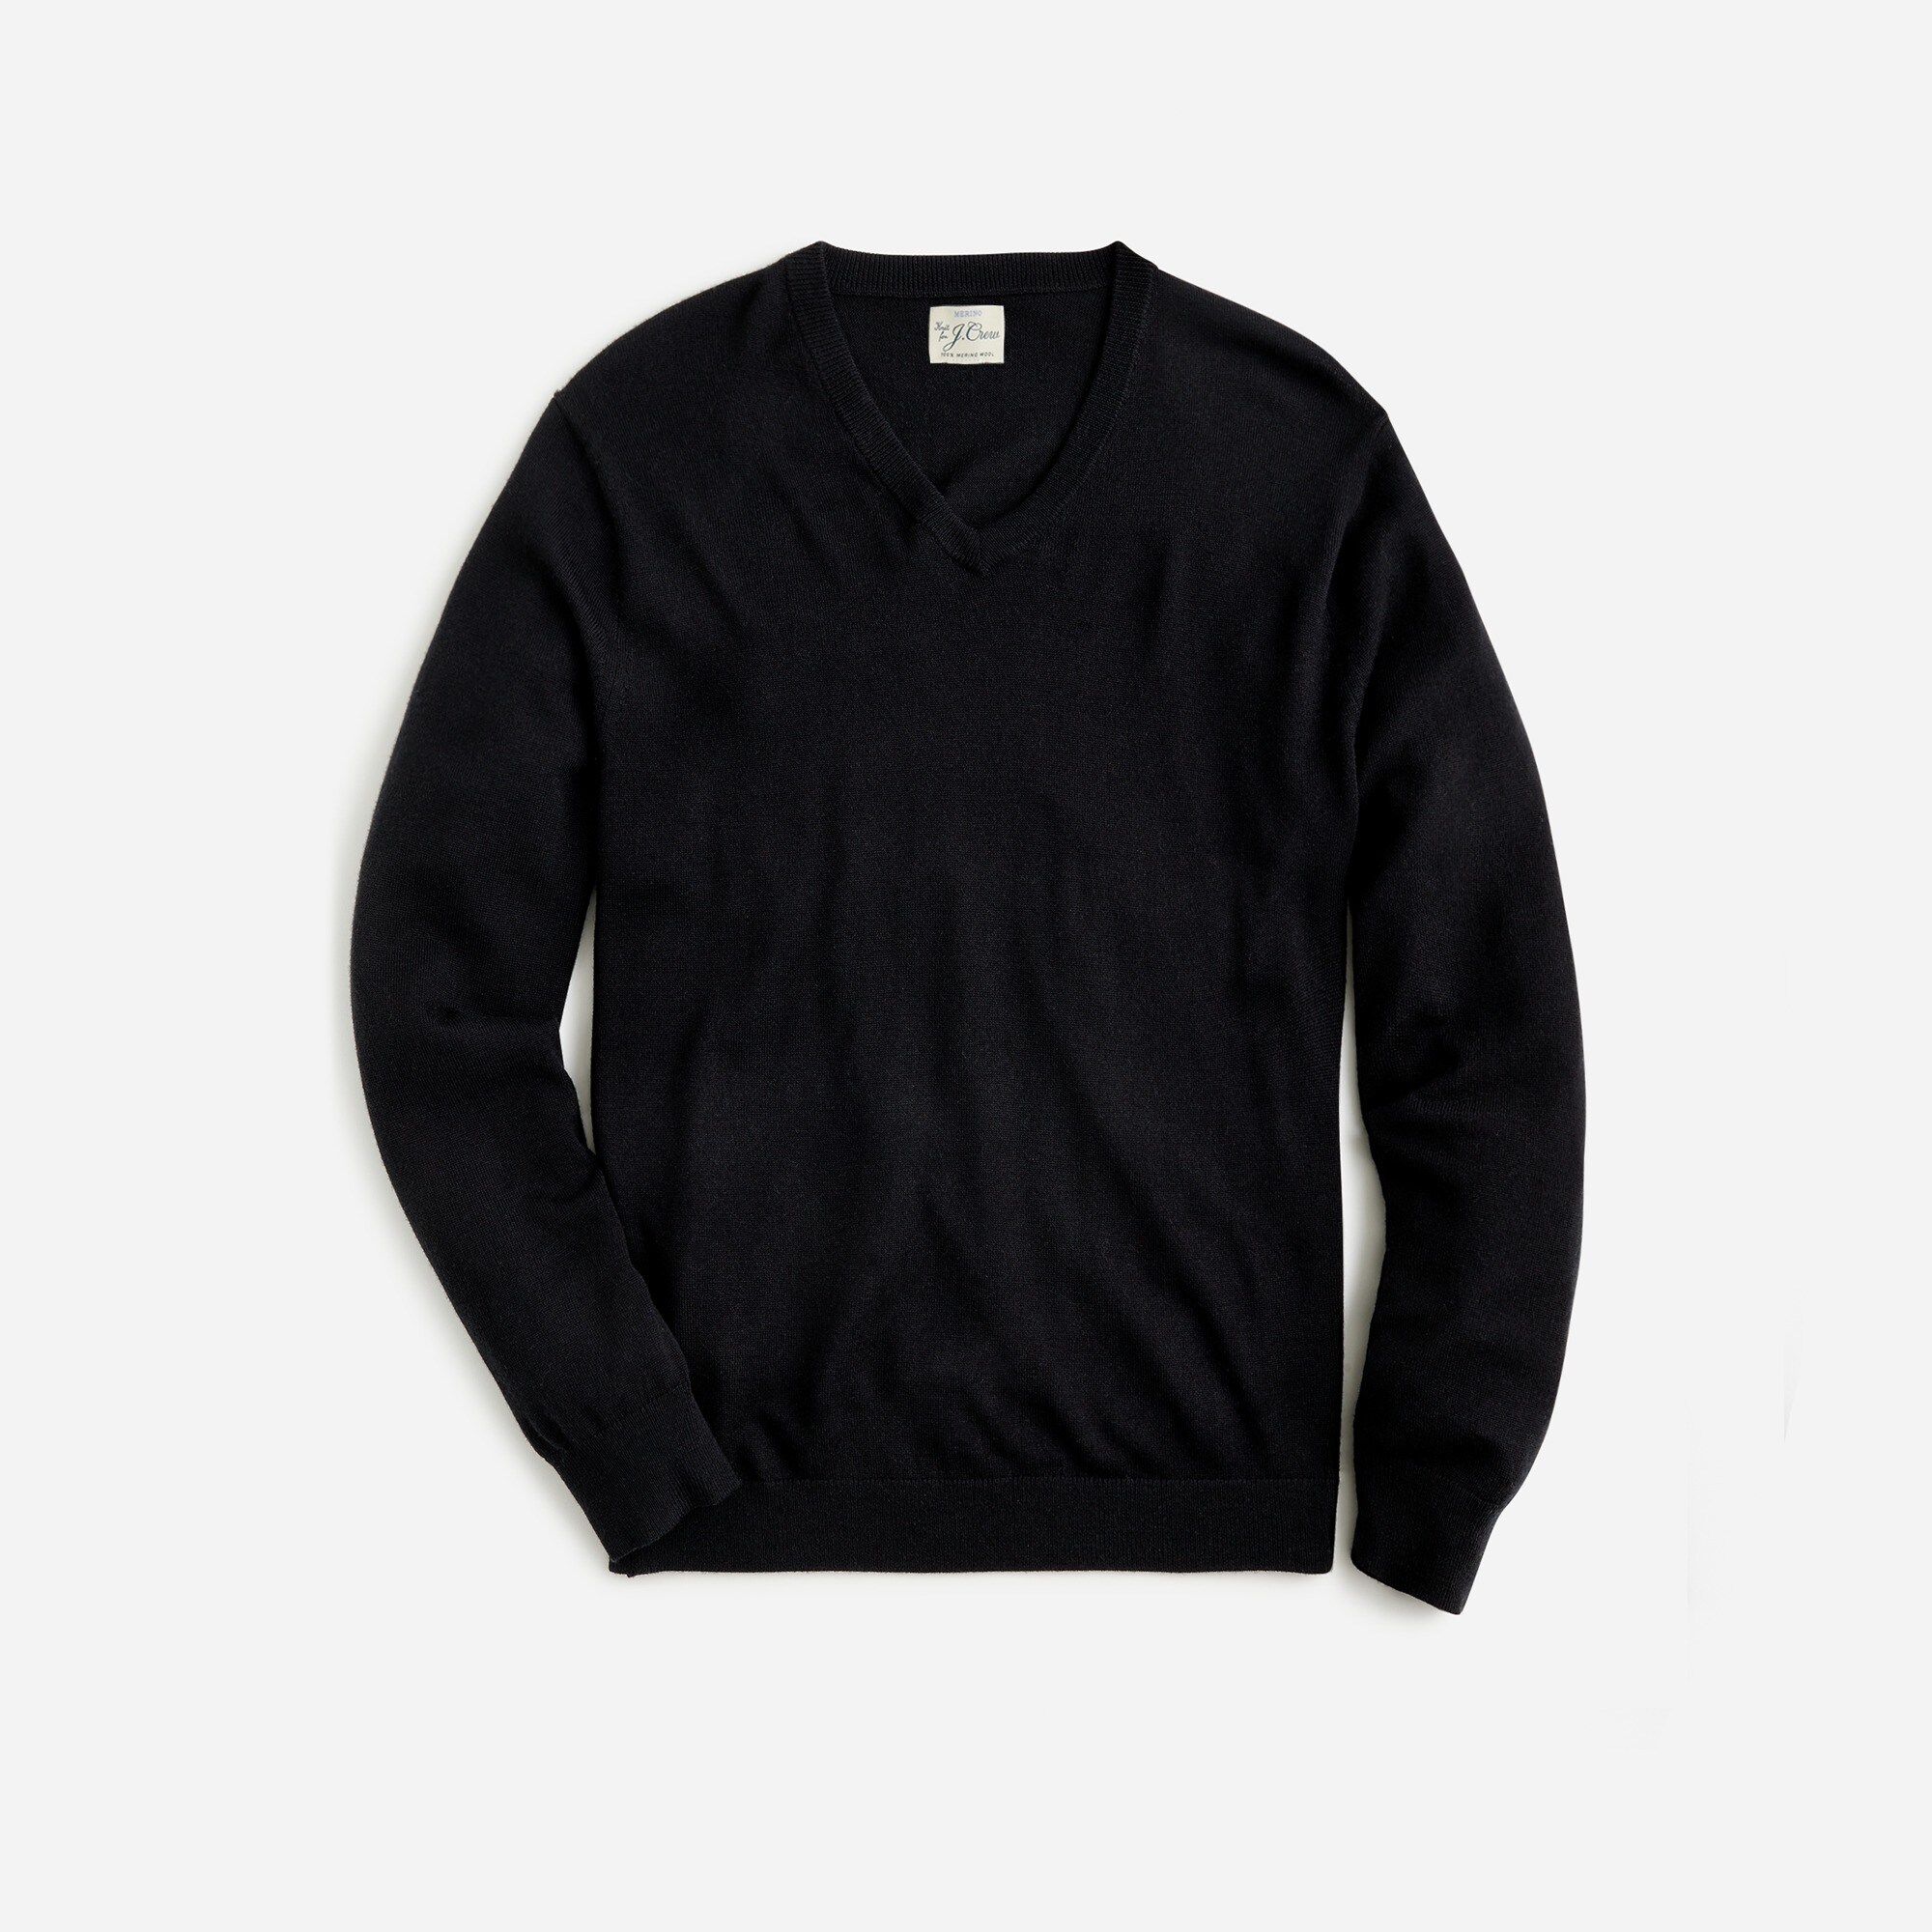  Merino wool V-neck sweater